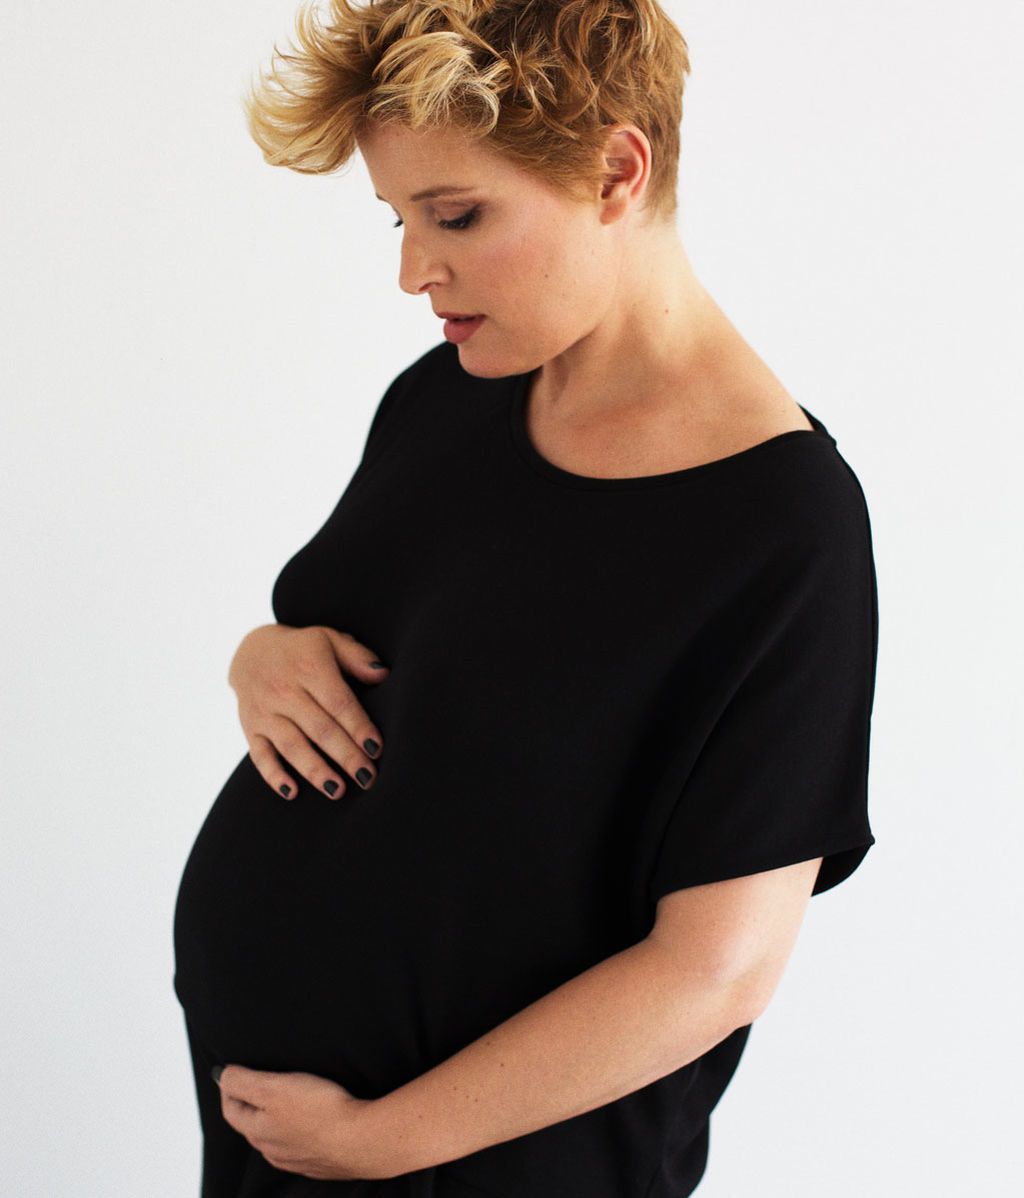 Tania Llasera y su segundo embarazo, foto a foto